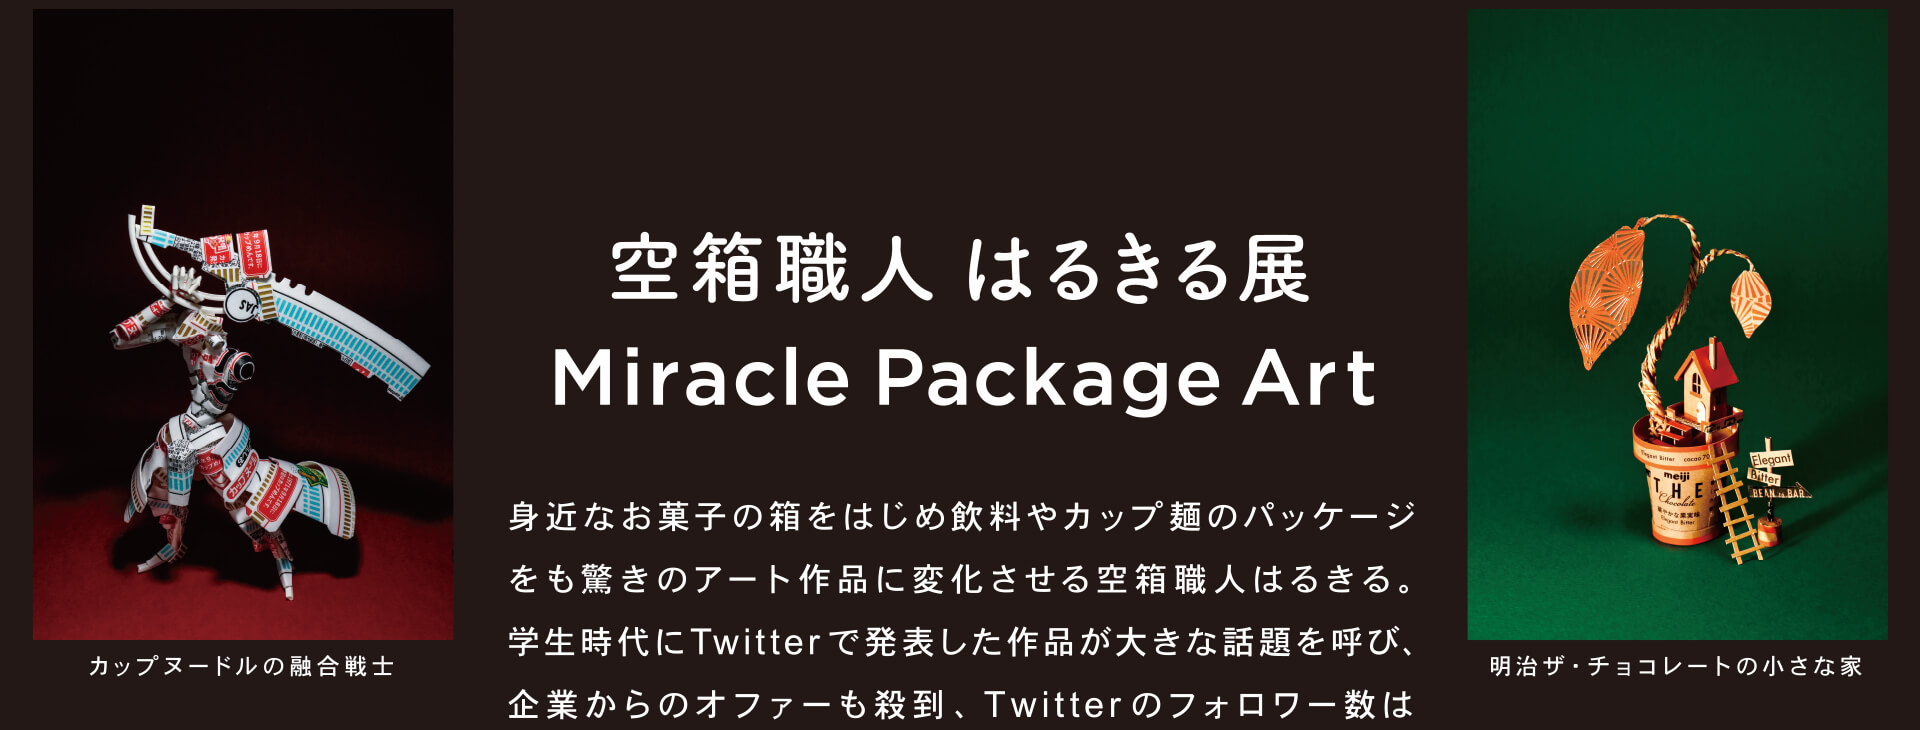 空箱職人はるきる展 Miracle Package Art